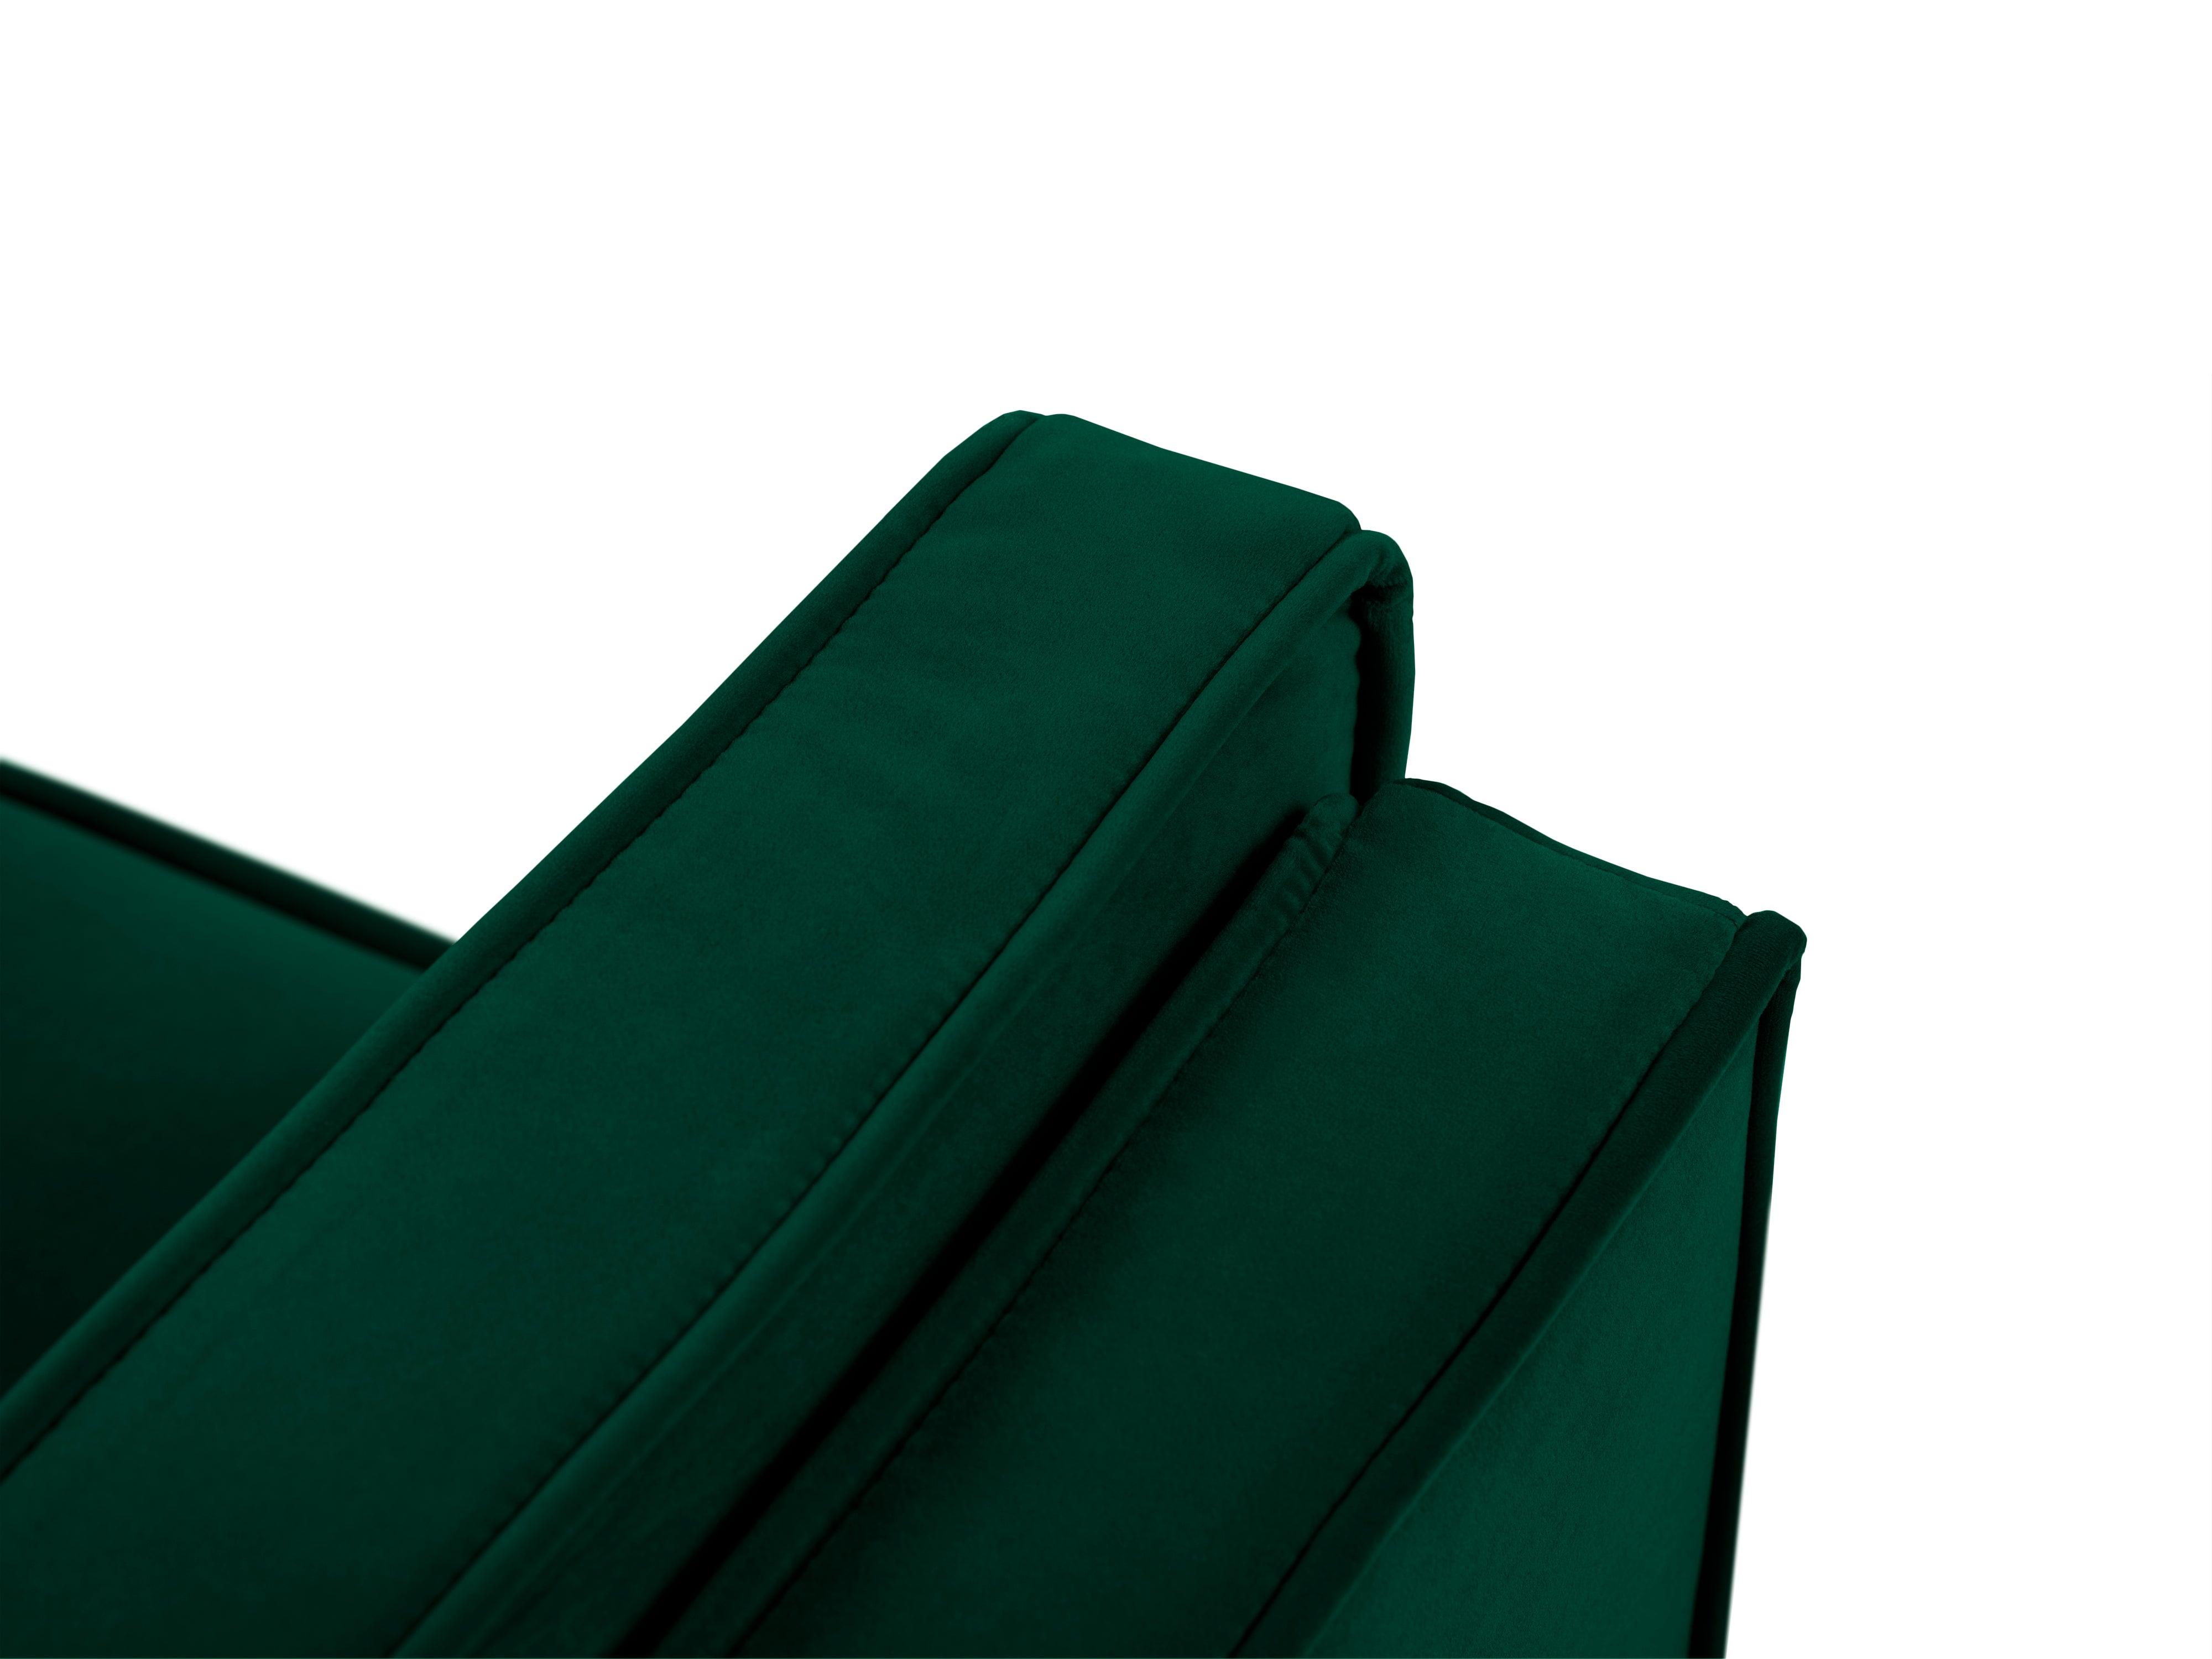 Sofa aksamitna 3-osobowa LUIS zieleń butelkowa ze złotą podstawą Milo Casa    Eye on Design